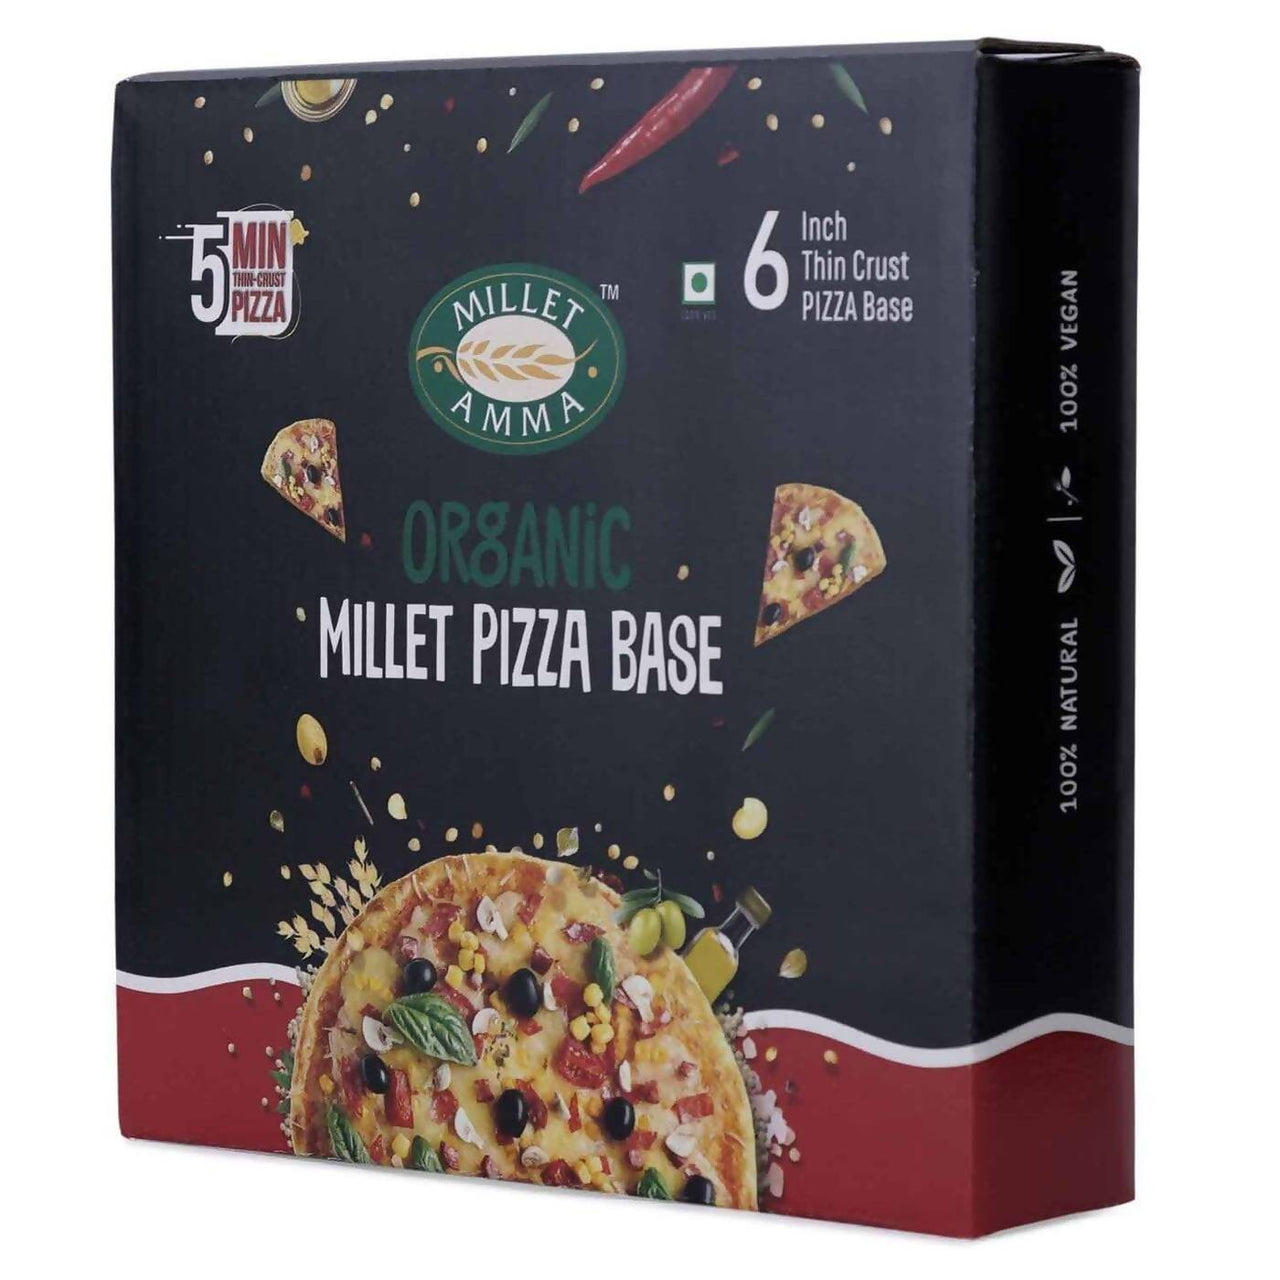 Millet Amma Organic Millet Pizza Base - Distacart